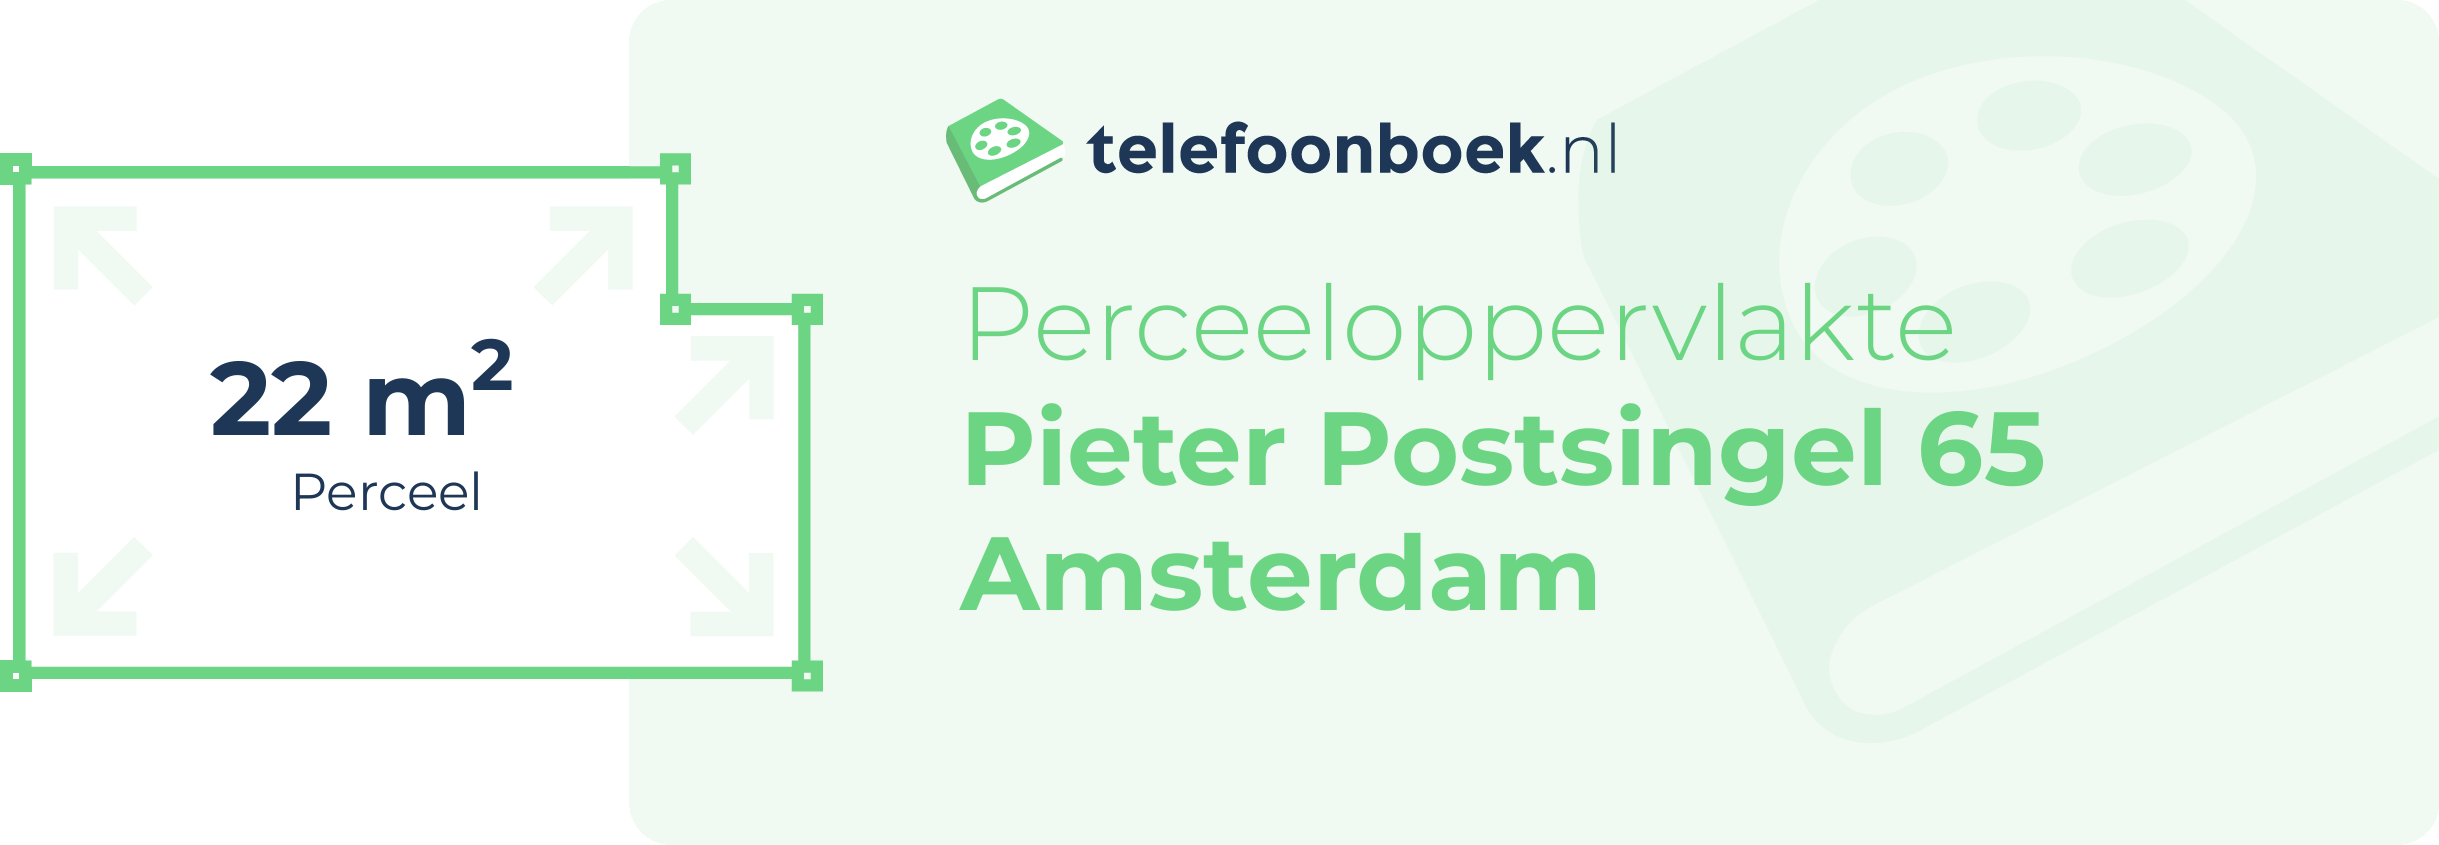 Perceeloppervlakte Pieter Postsingel 65 Amsterdam